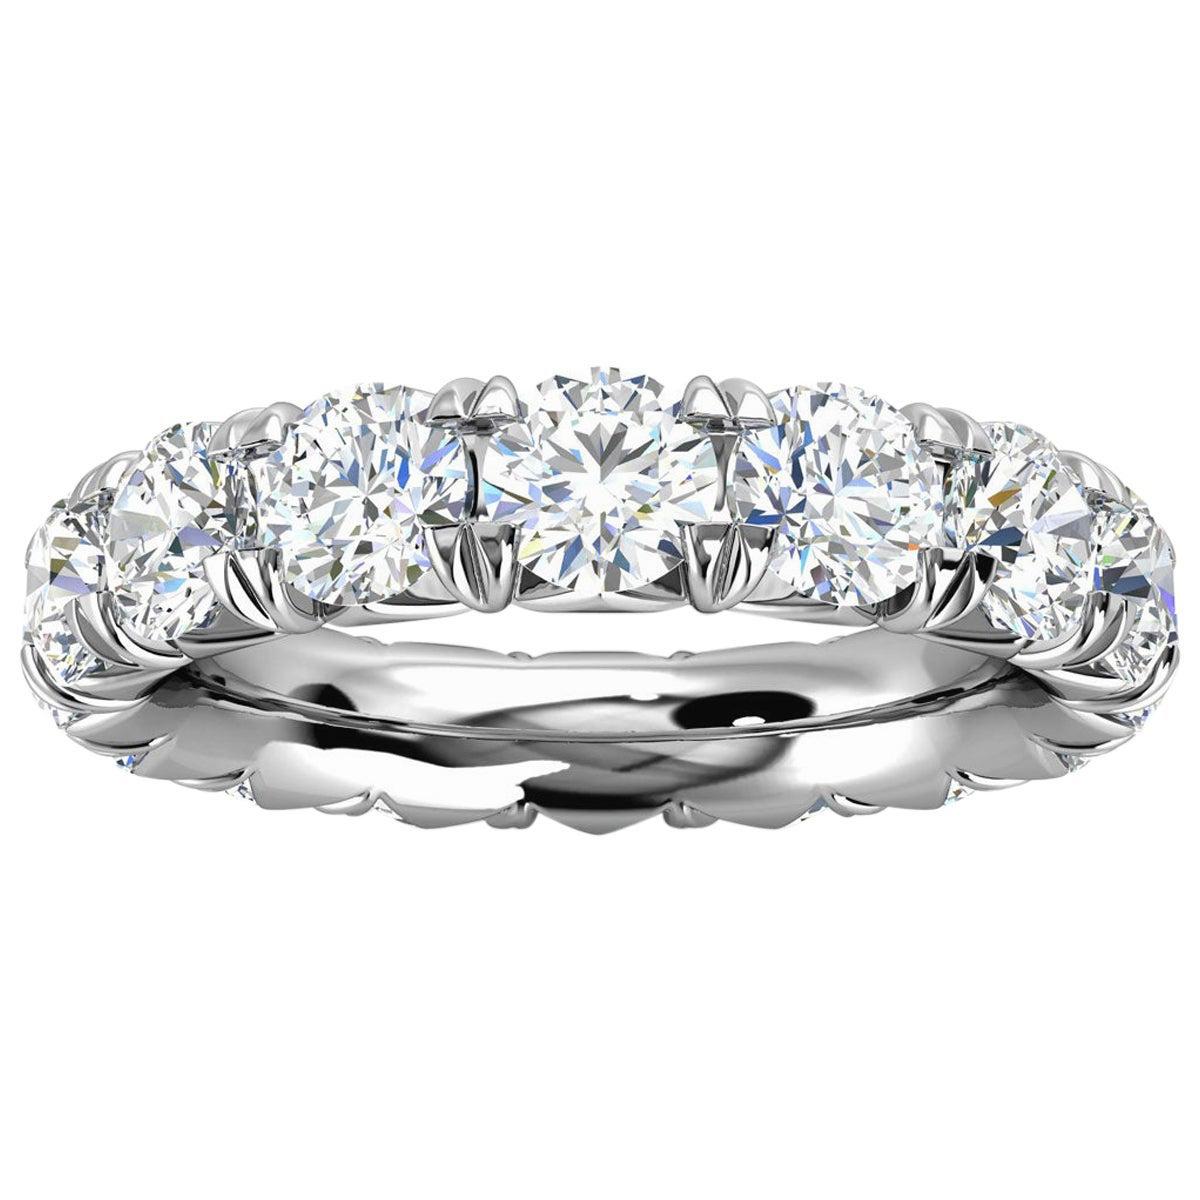 14k White Gold Mia French Pave Diamond Eternity Ring '4 Ct. Tw'